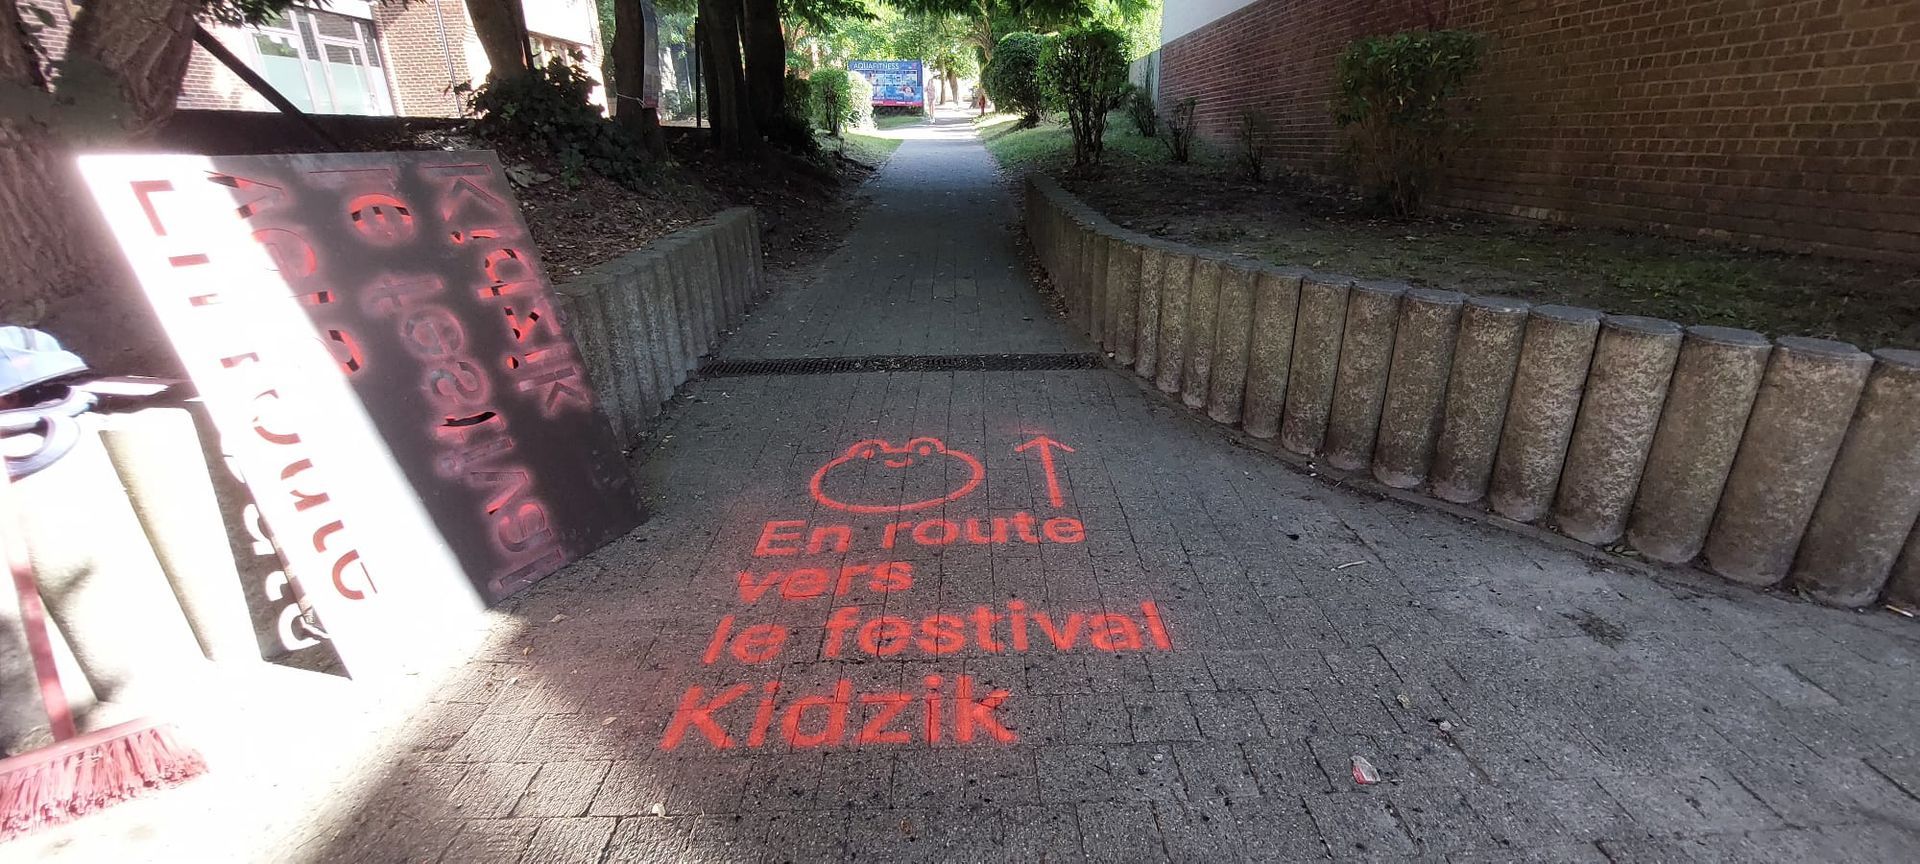 Chalk-tag festival Kidzik